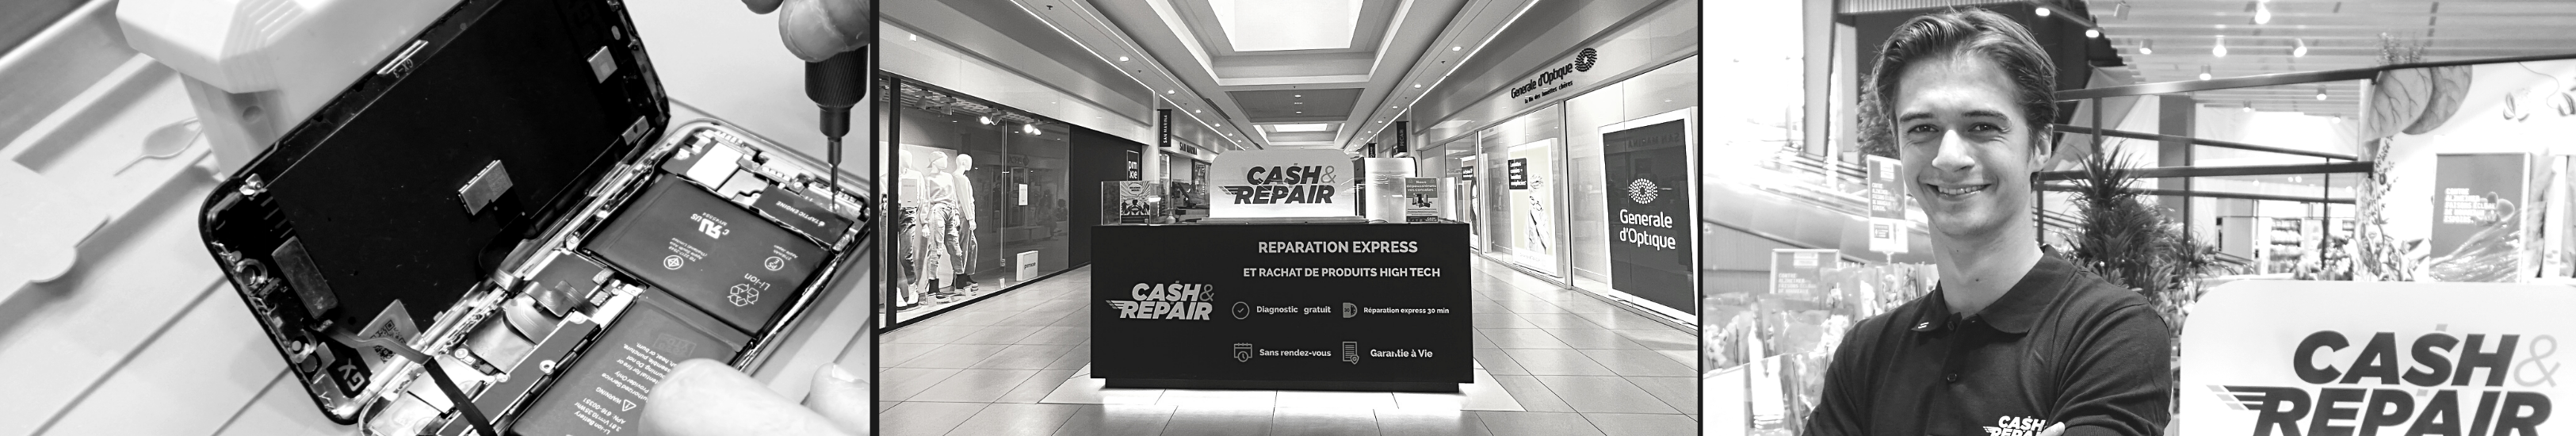 - Atelier de réparation Cash and Repair Vannes